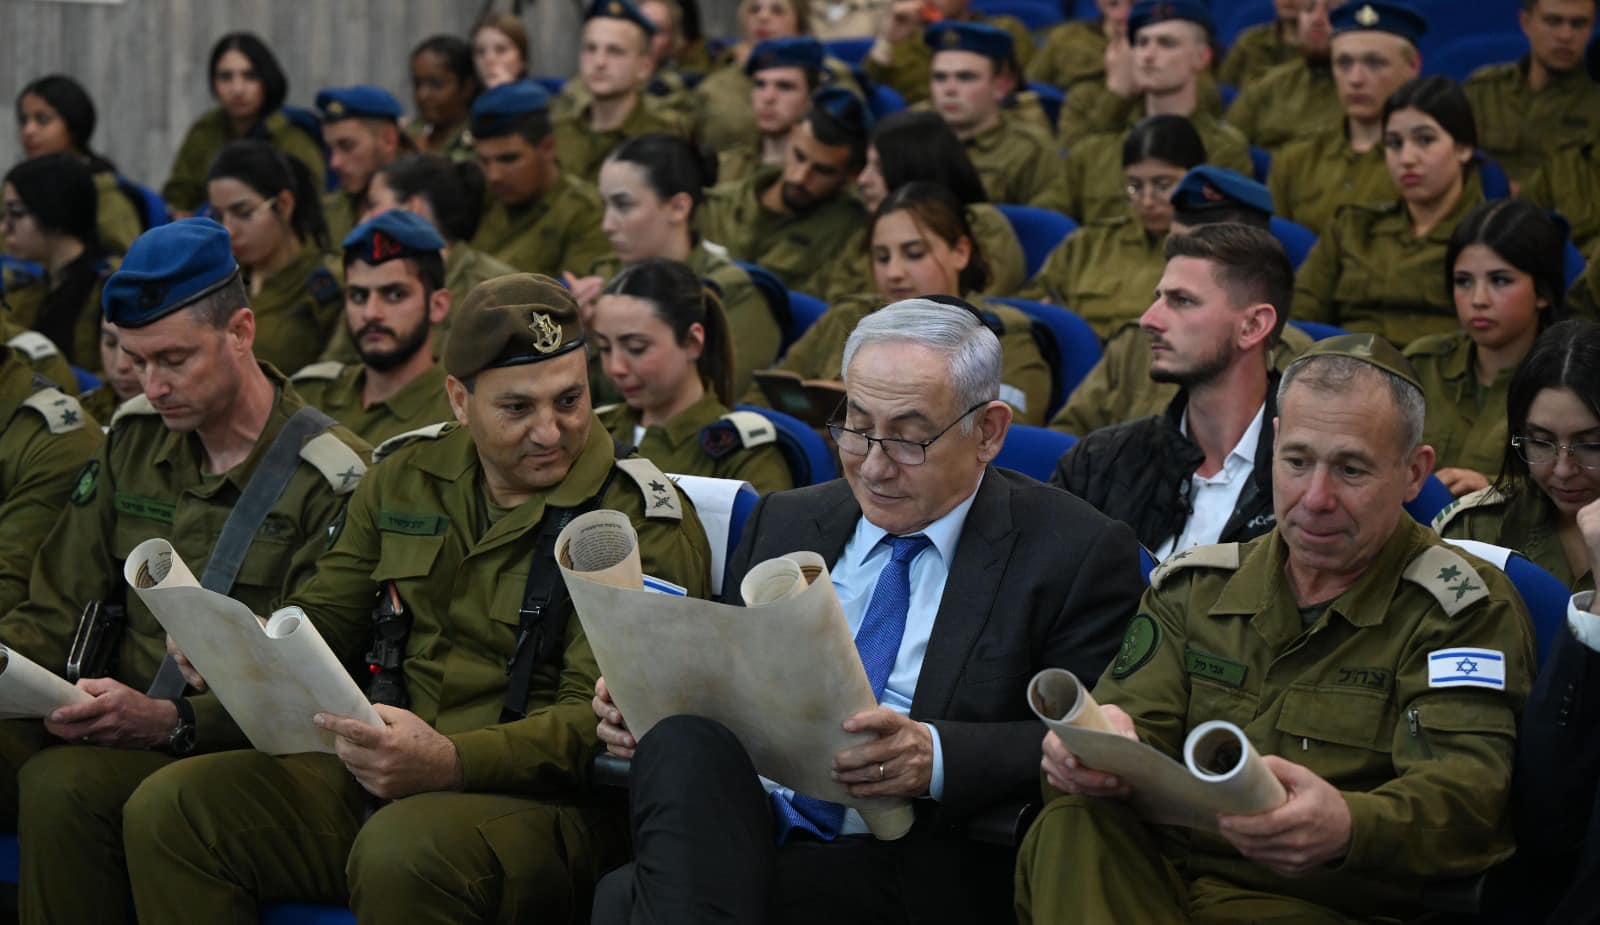 以色列總理納坦雅胡在極端正統派猶太教徒的強制徵兵問題上，傷透腦筋。圖/取自Benjamin Netanyahu臉書